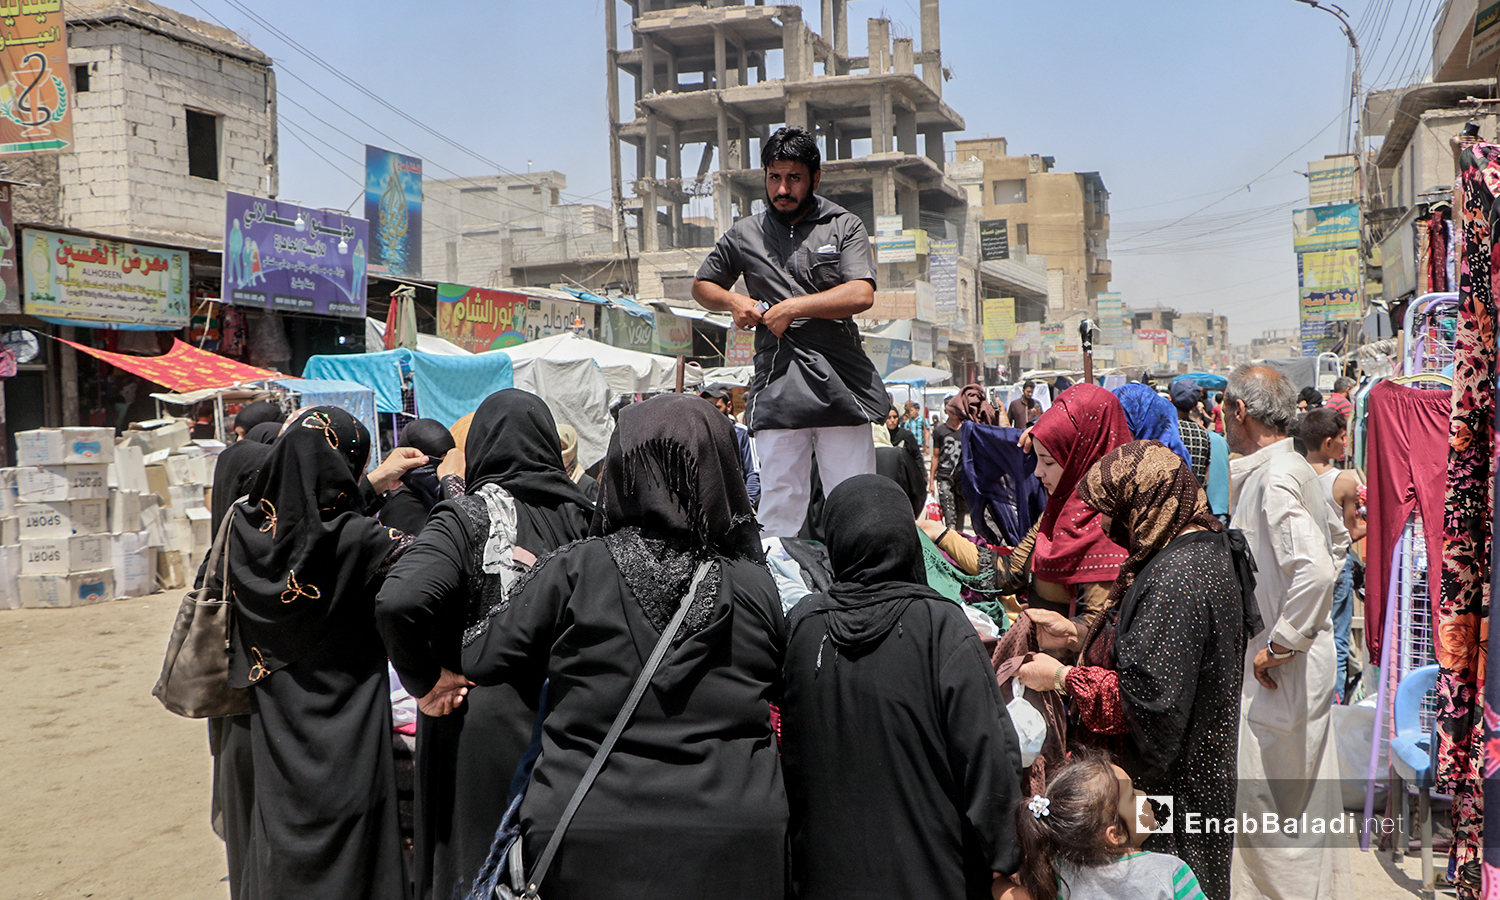 شاب يبيع الألبسة على بسطة في سوق مدينة الرقة قبيل عيد الأضحى - 30 تموز 2020 (عنب بلدي / عبد العزيز الصالح )